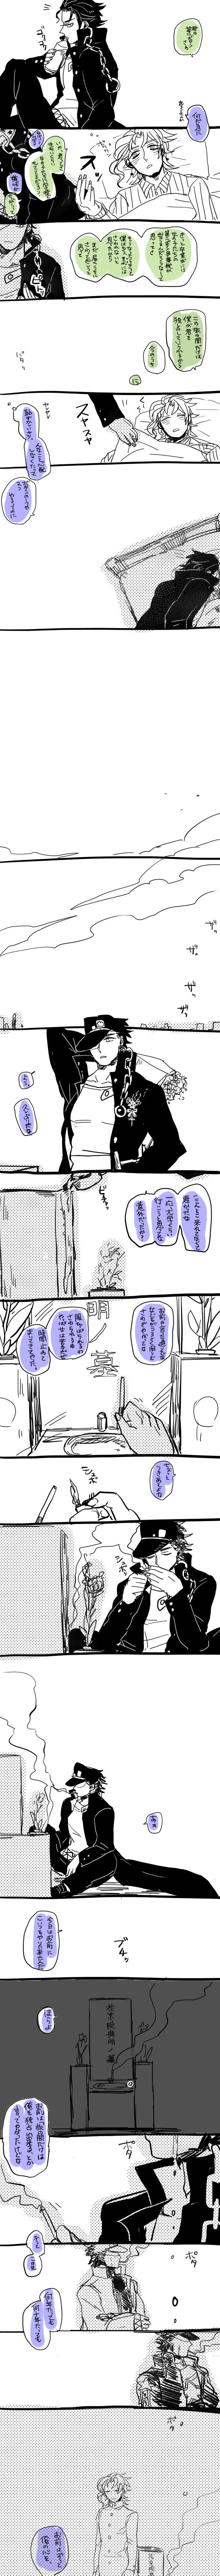 【承花】有一直被束缚的愿望的承太郎和第二颗扣子的故事插画图片壁纸